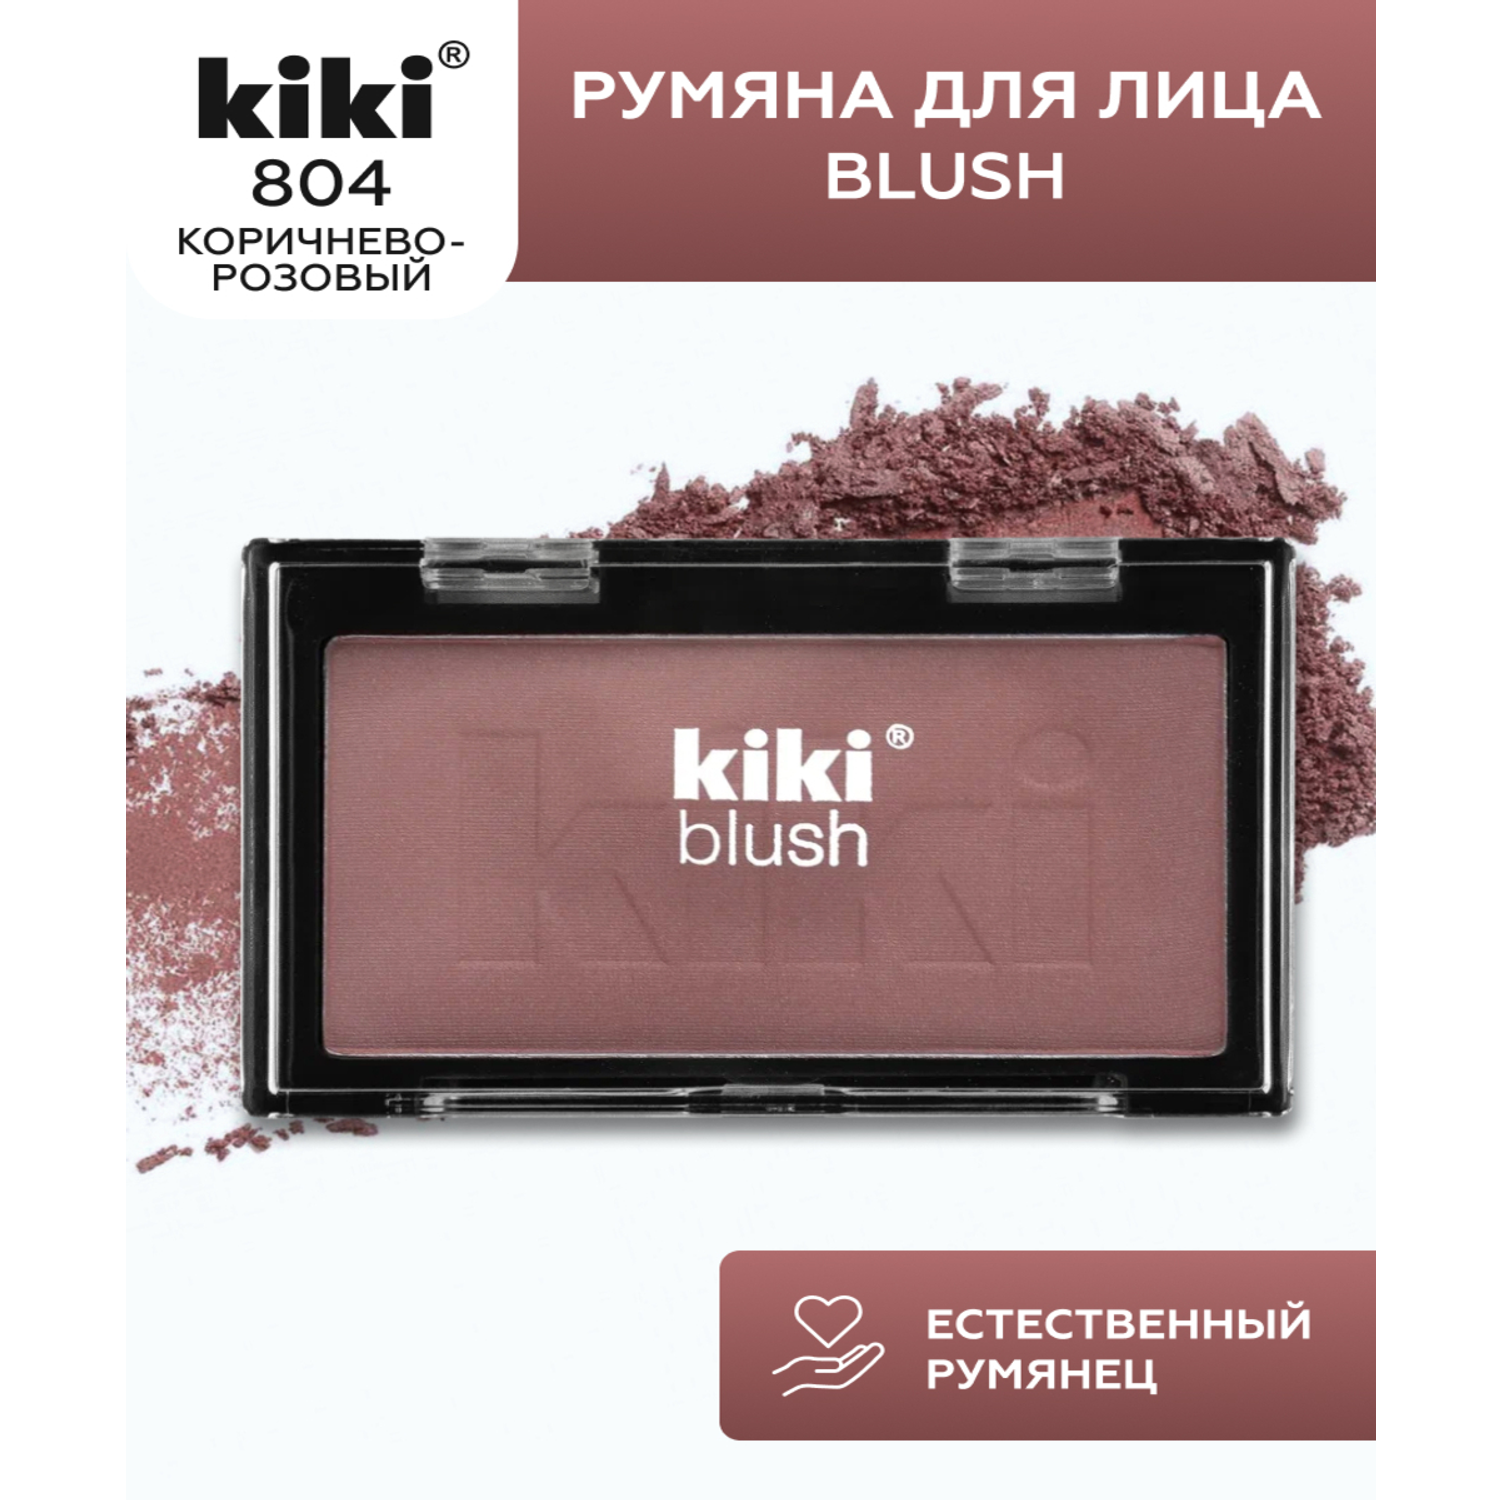 Румяна для лица KIKI BLUSH 804 коричнево-розовый - фото 1